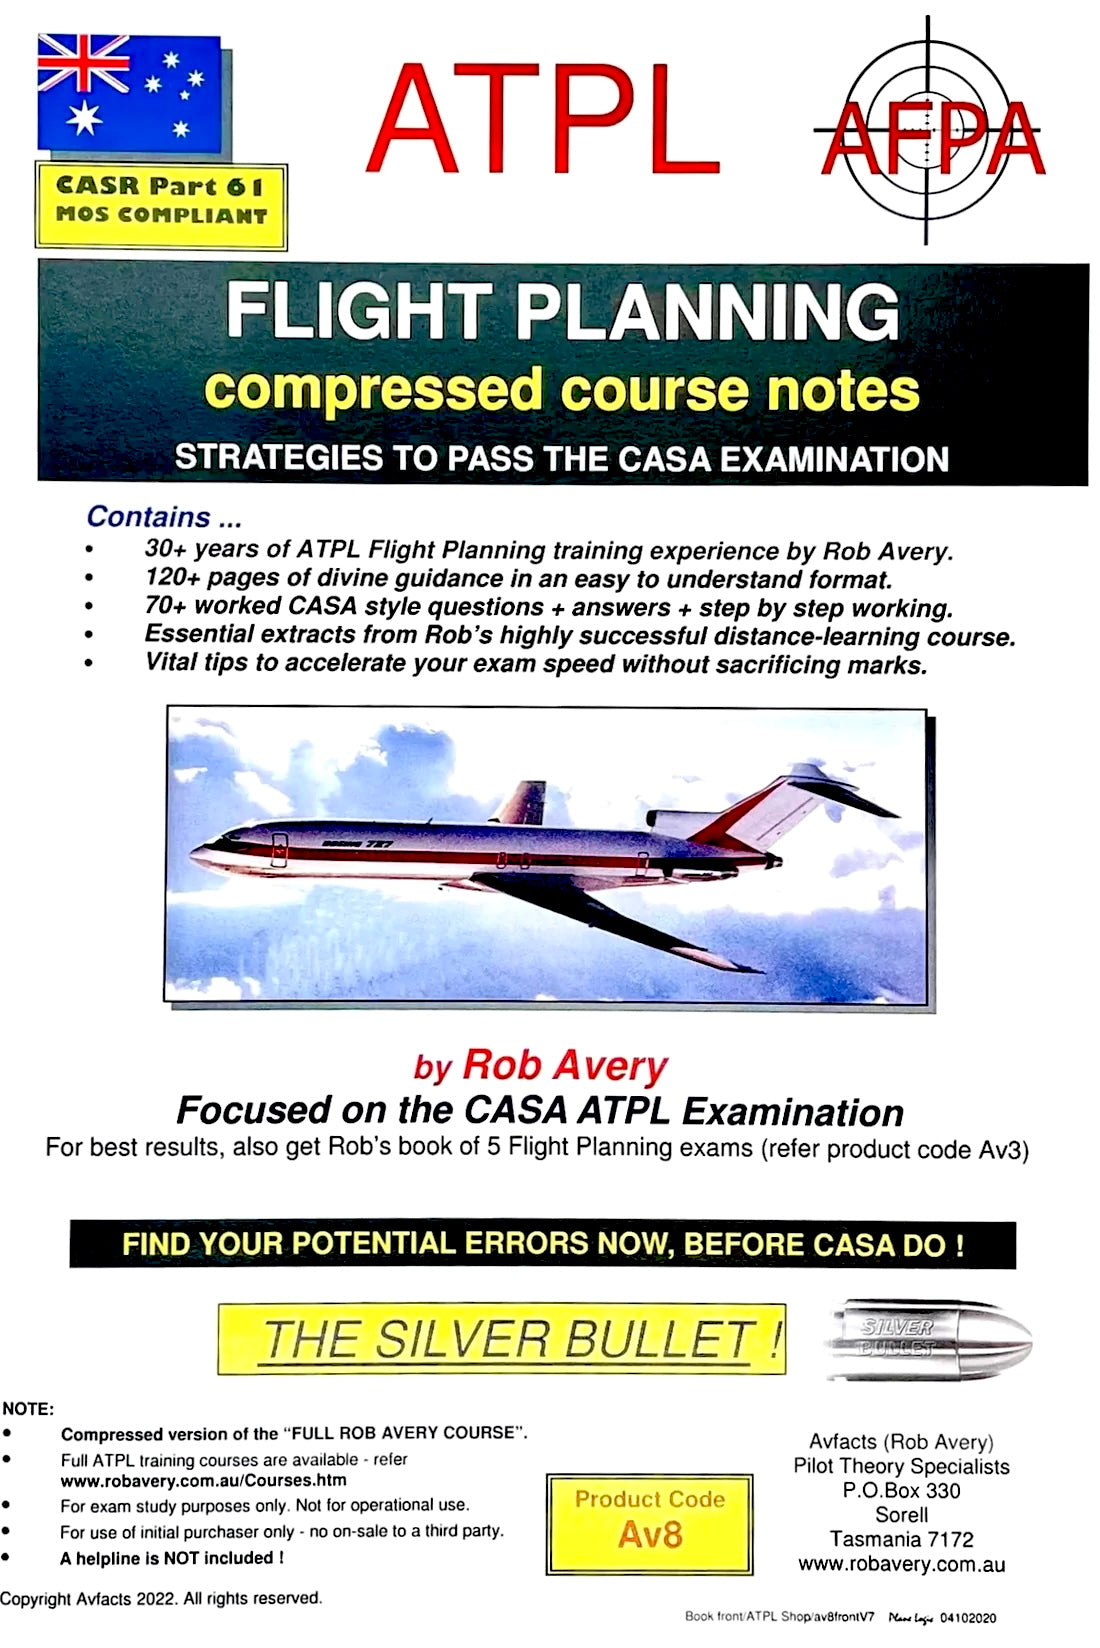 Avfacts by Rob Avery ATPL Flight Planning - AV8